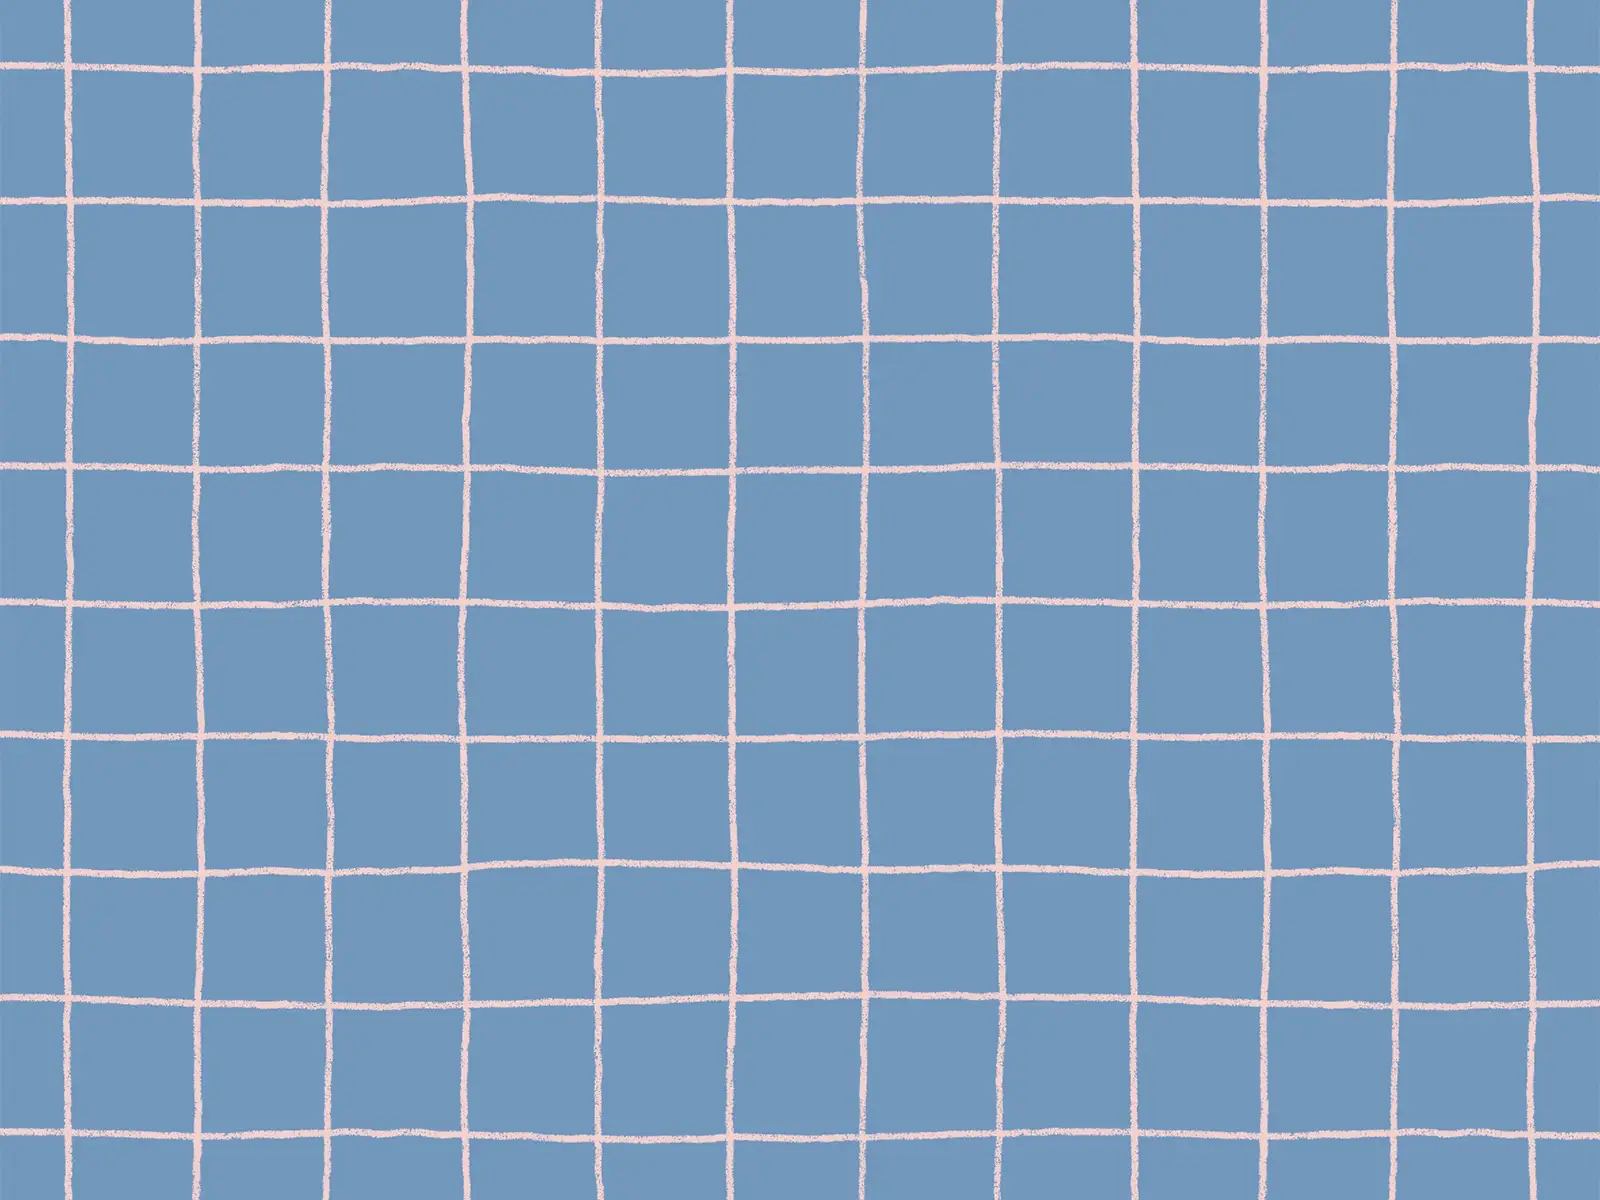 Blue grid pattern